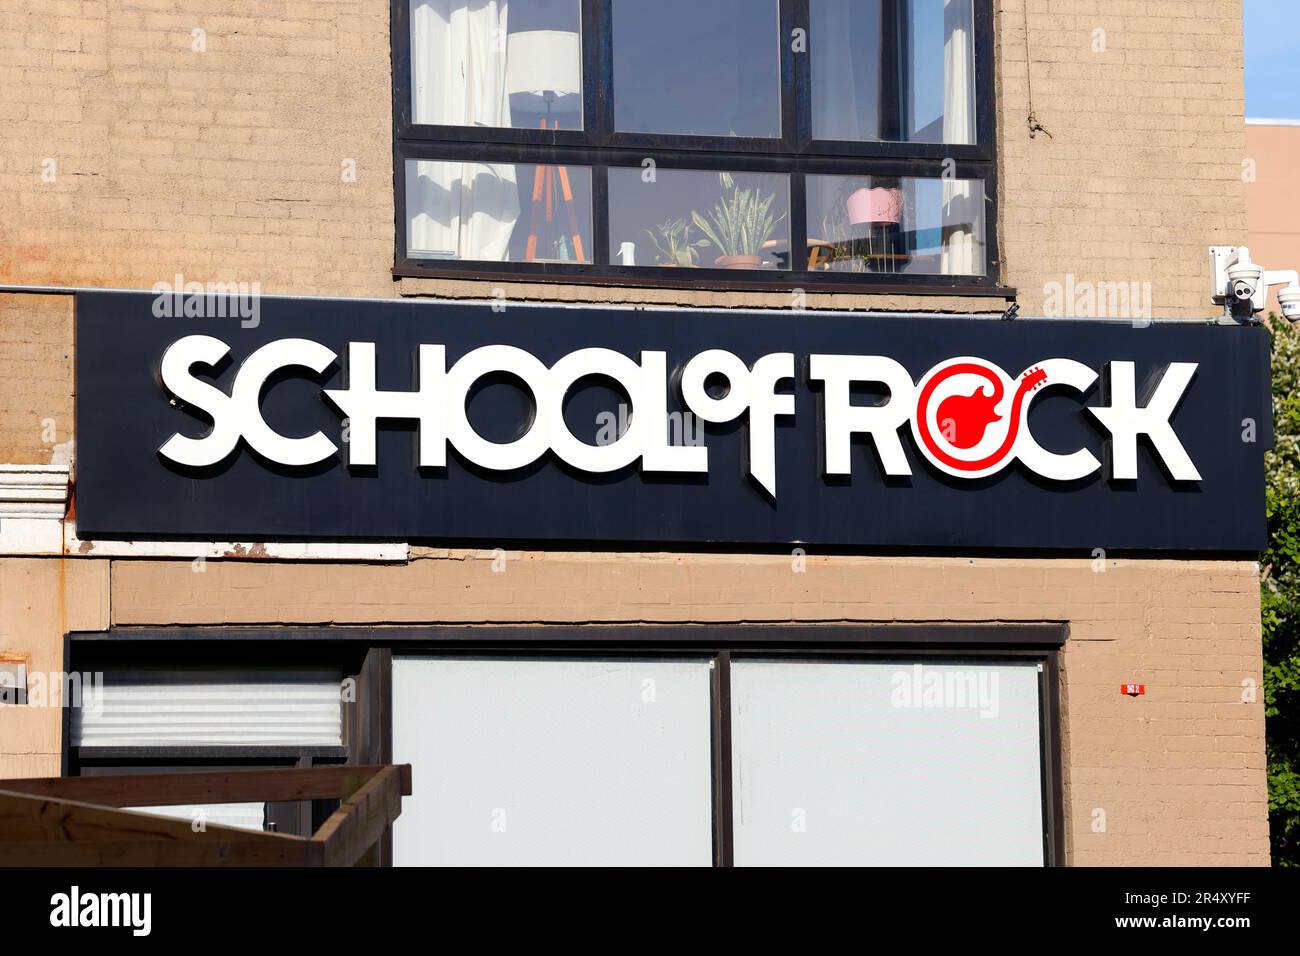 Eine Beschilderung der School of Rock an einem Franchisestandort in Brooklyn, New York City. Die School of Rock ist ein Musikprogramm für alle Altersgruppen. Stockfoto